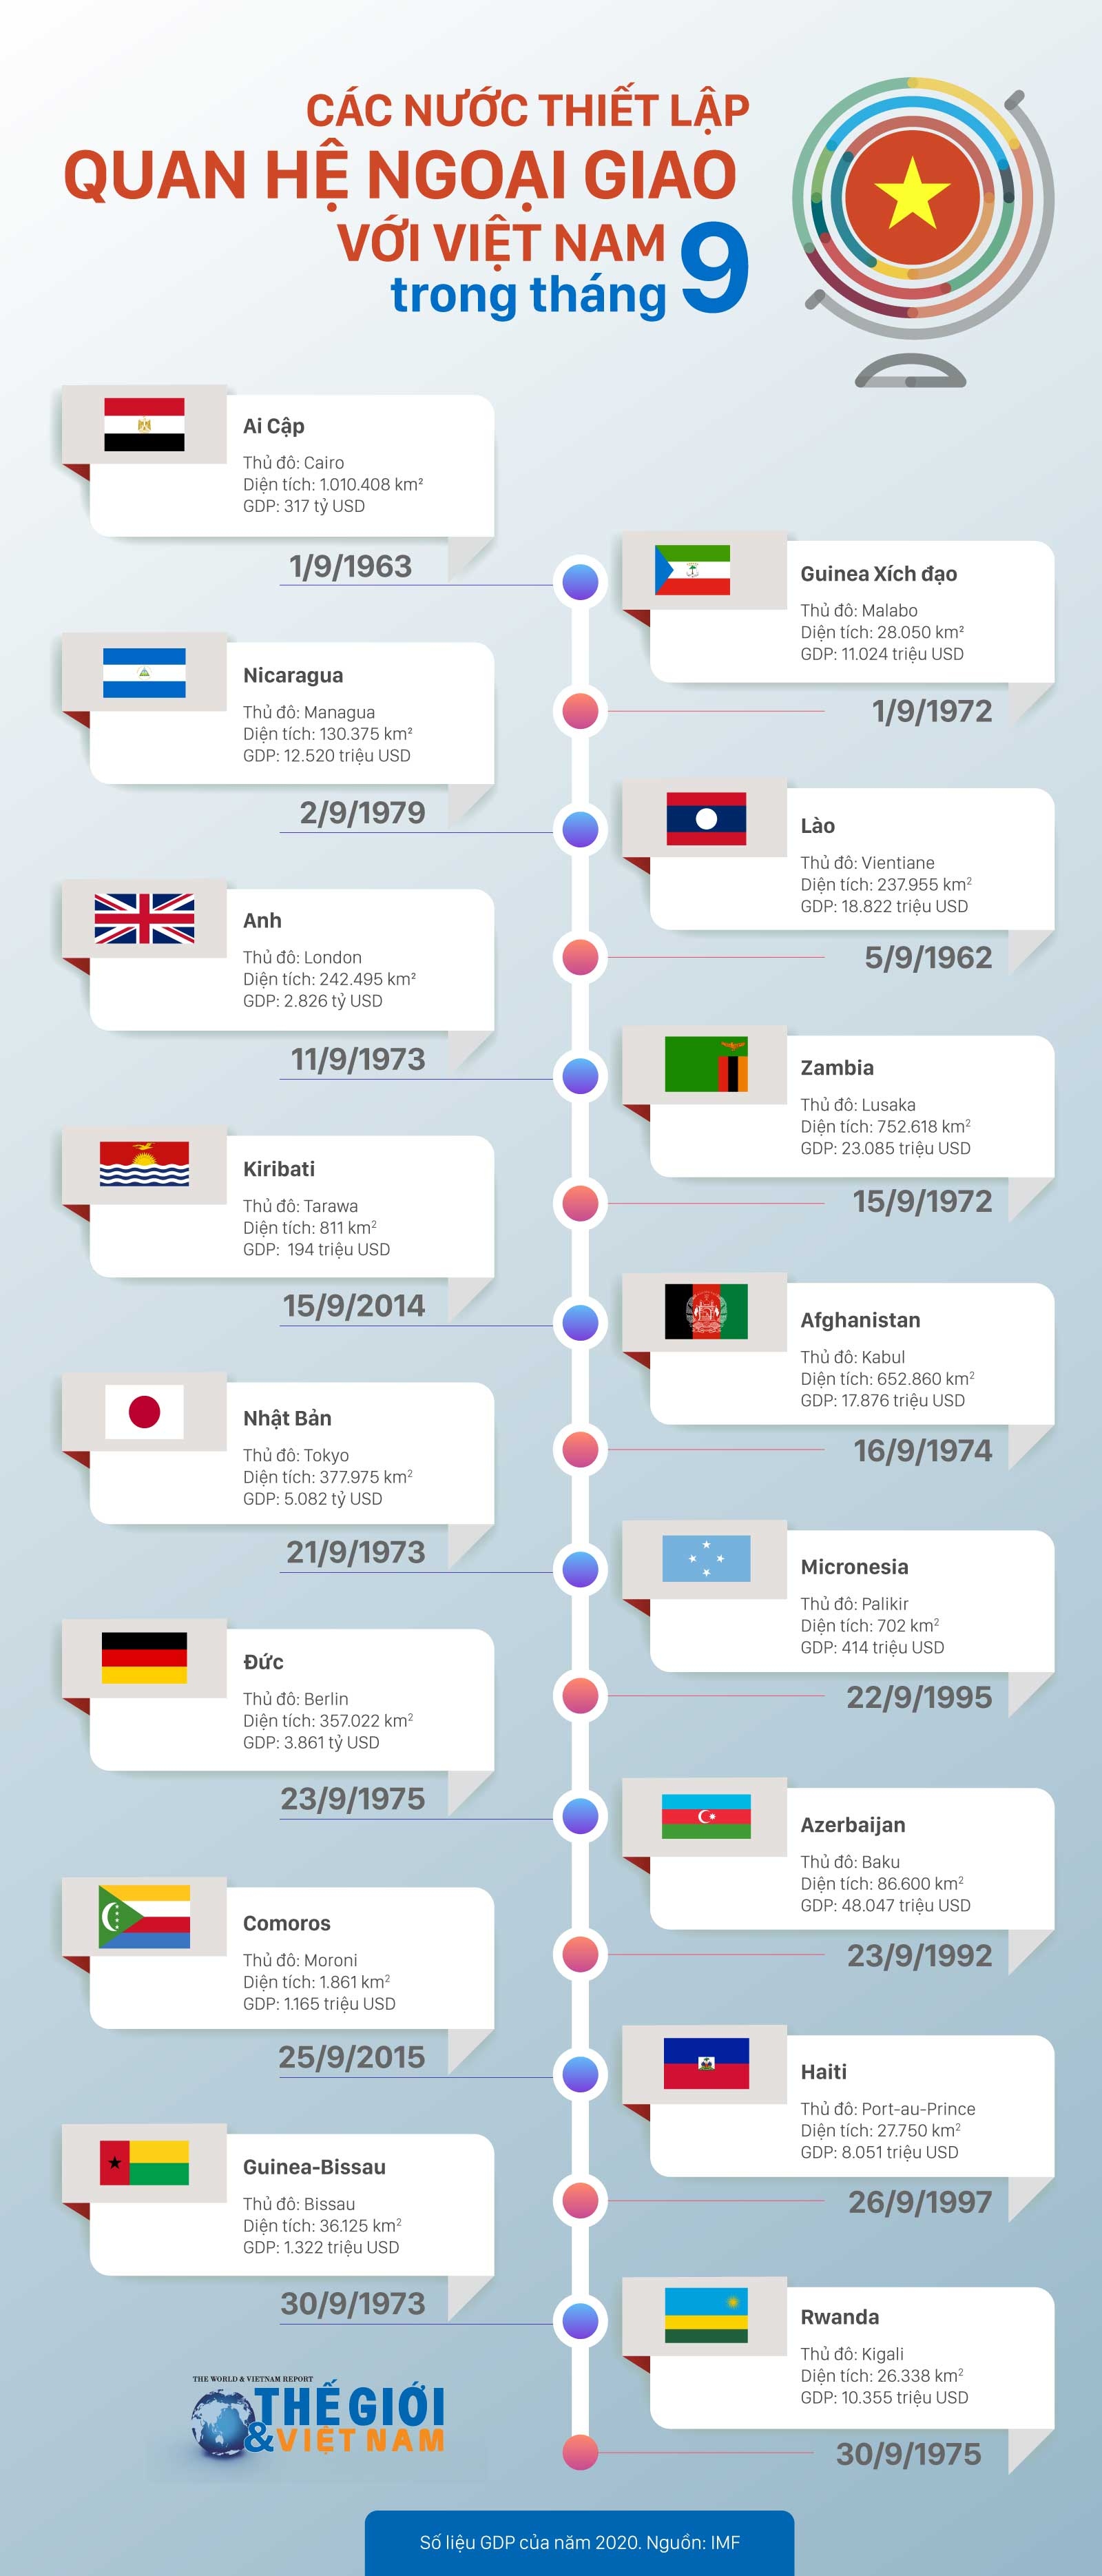 Các nước thiết lập quan hệ ngoại giao với Việt Nam trong tháng 9. (Nguồn: Báo TG&VN)